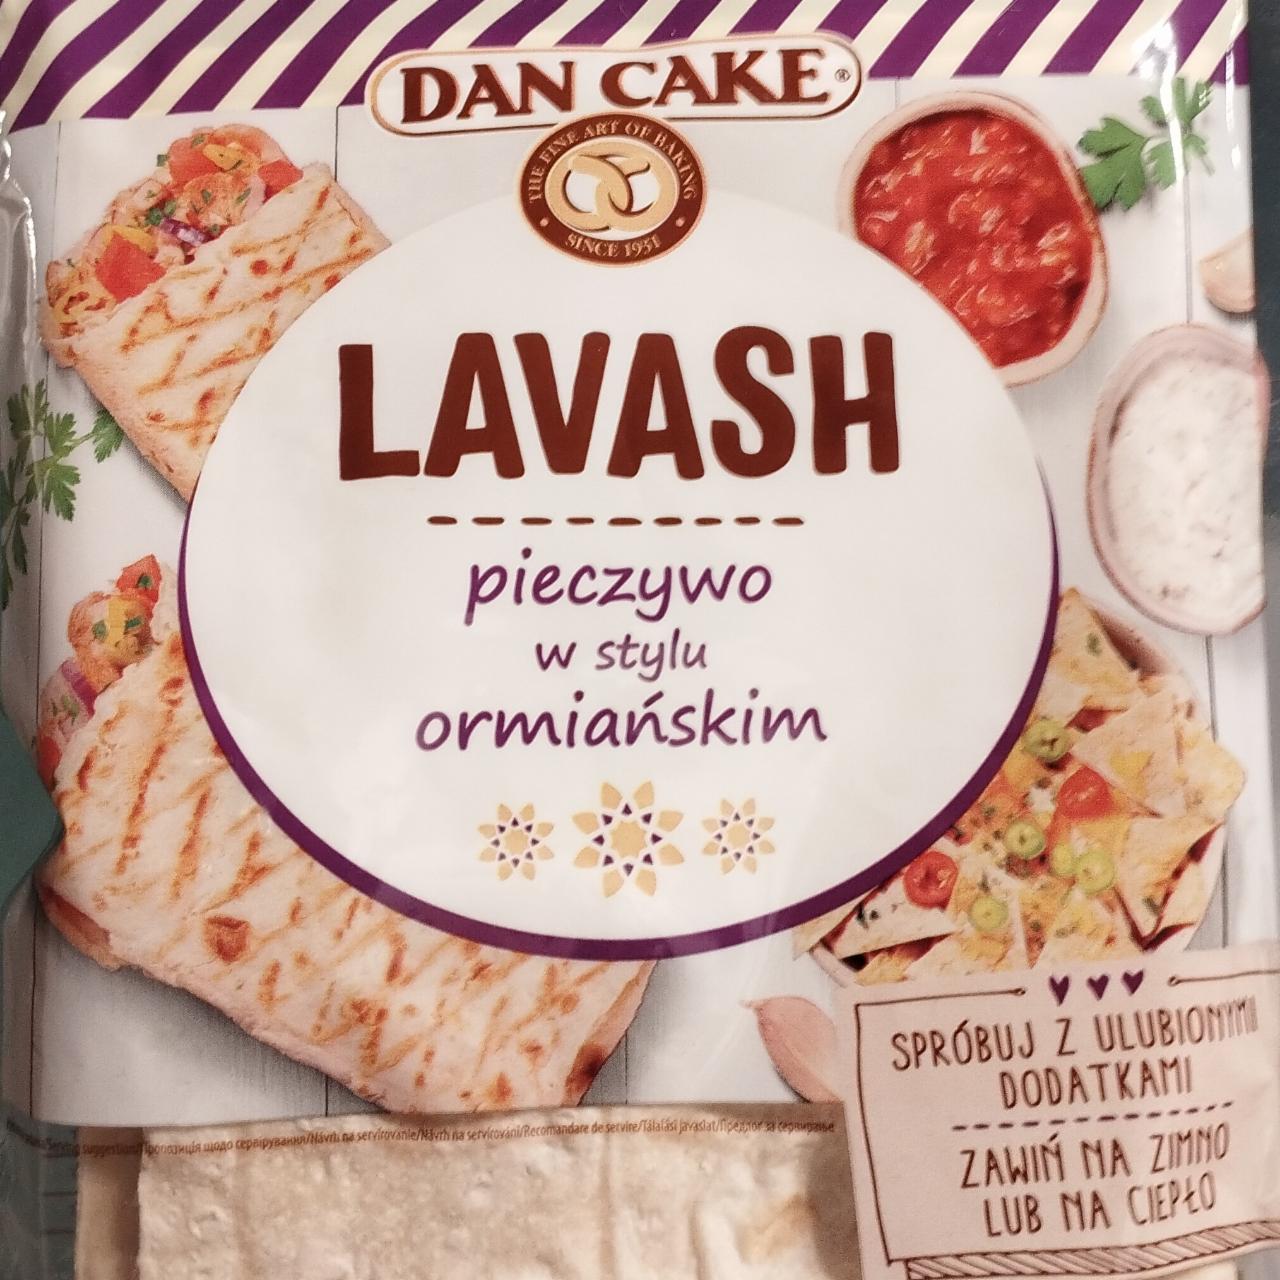 Zdjęcia - Lavash pieczywo w stylu ormiańskim Dan Cake